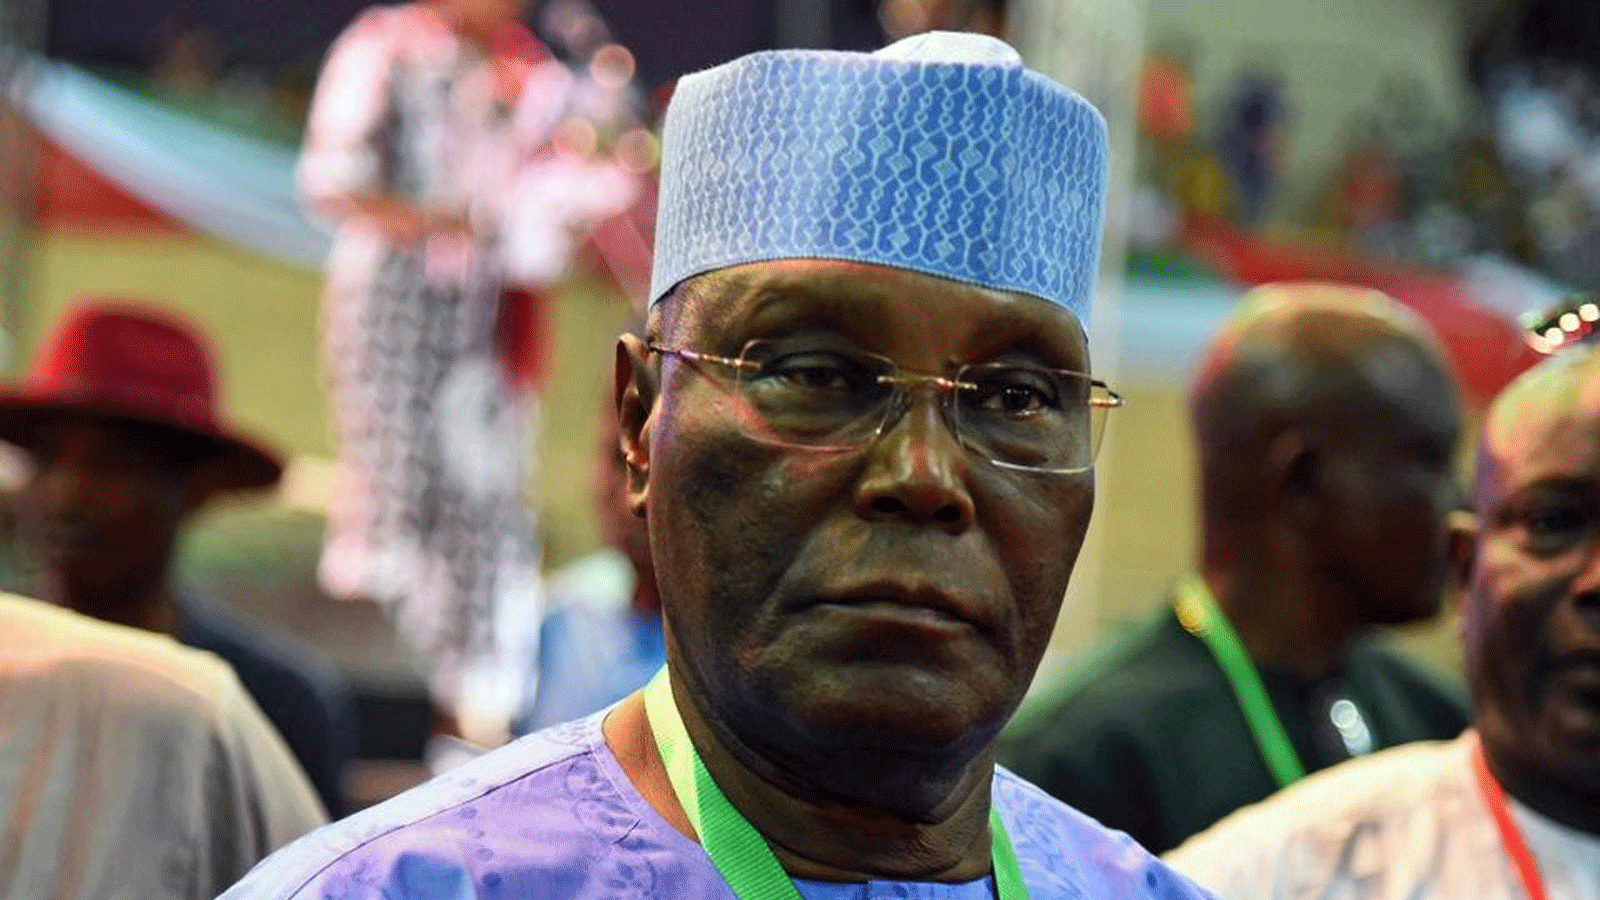  يحضر نائب الرئيس النيجيري السابق أتيكو أبو بكر الانتخابات التمهيدية لحزب الشعوب الديمقراطي (PDP) المعارض في أبوجا، في 28 أيار\مايو 2022